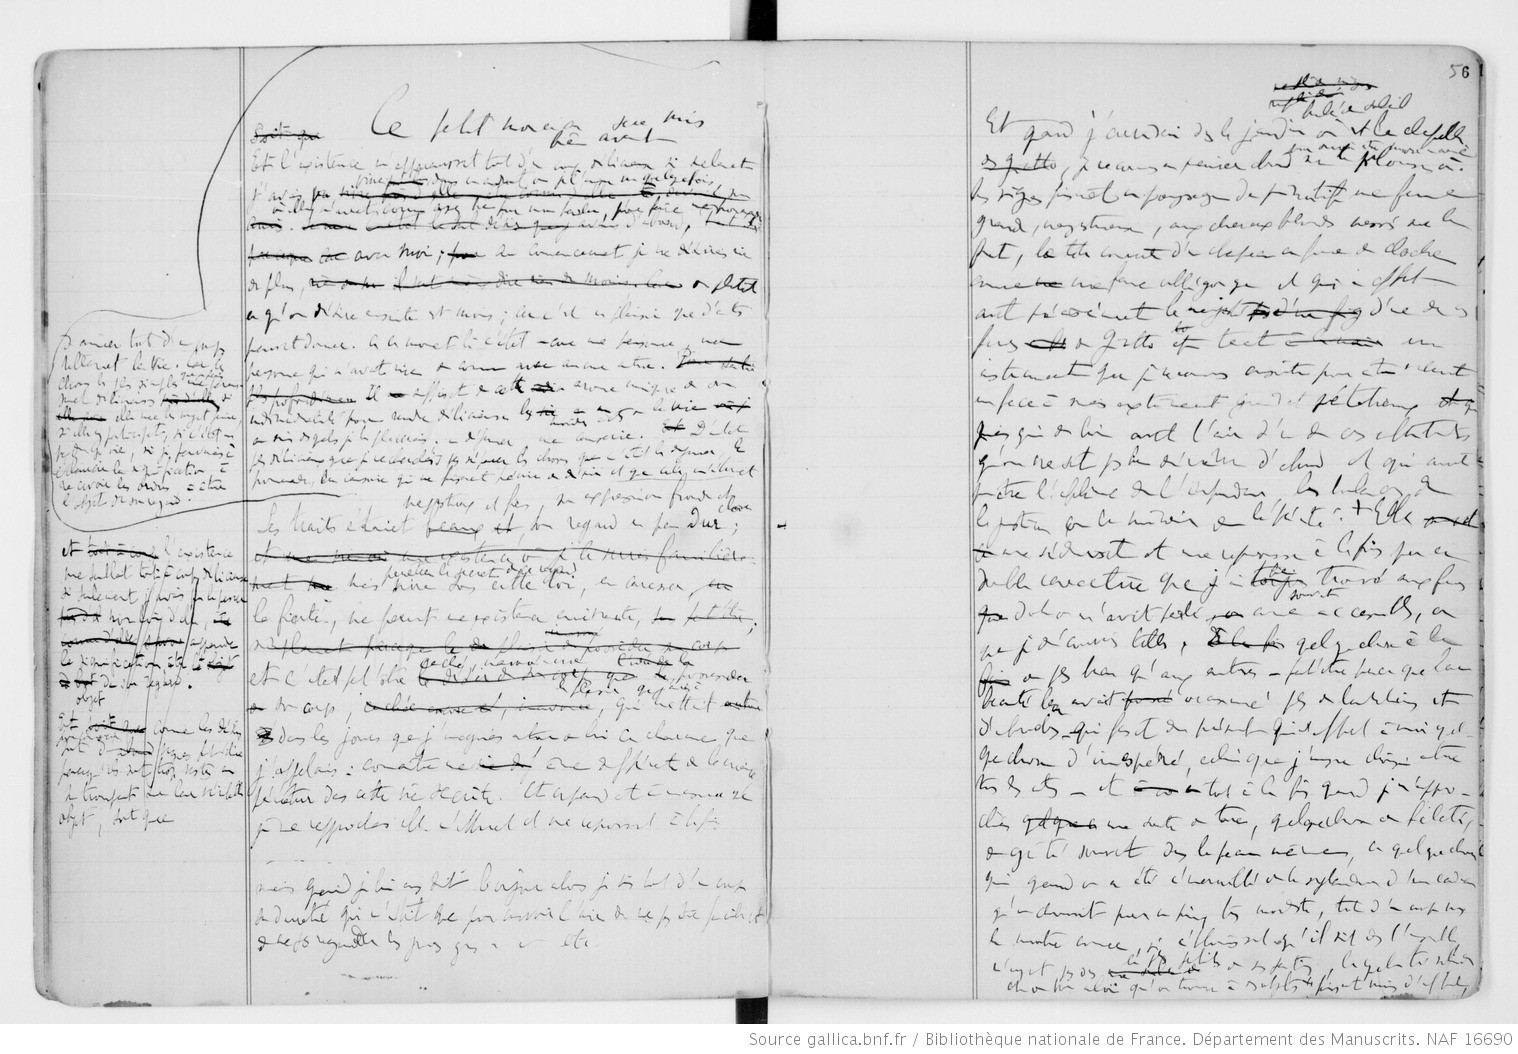 Fonds Proust - Cahier 50 - Gallica BNF : Albertine disparue (ébauches avec développement important sur la femme de chambre de Mme Putbus)